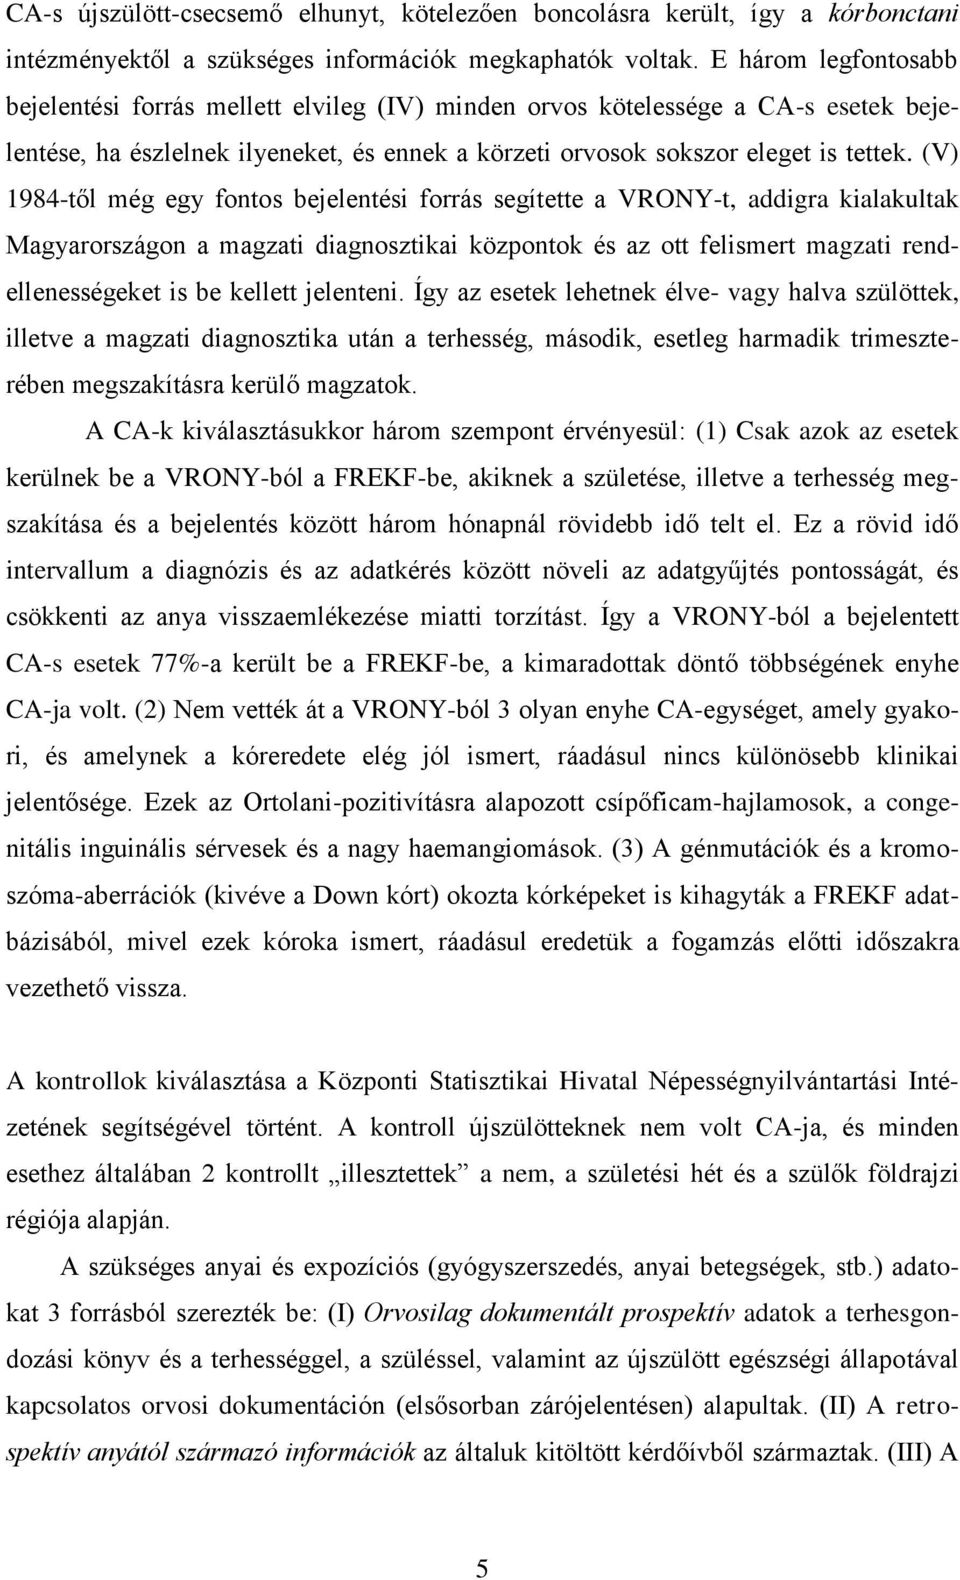 (V) 1984-től még egy fontos bejelentési forrás segítette a VRONY-t, addigra kialakultak Magyarországon a magzati diagnosztikai központok és az ott felismert magzati rendellenességeket is be kellett